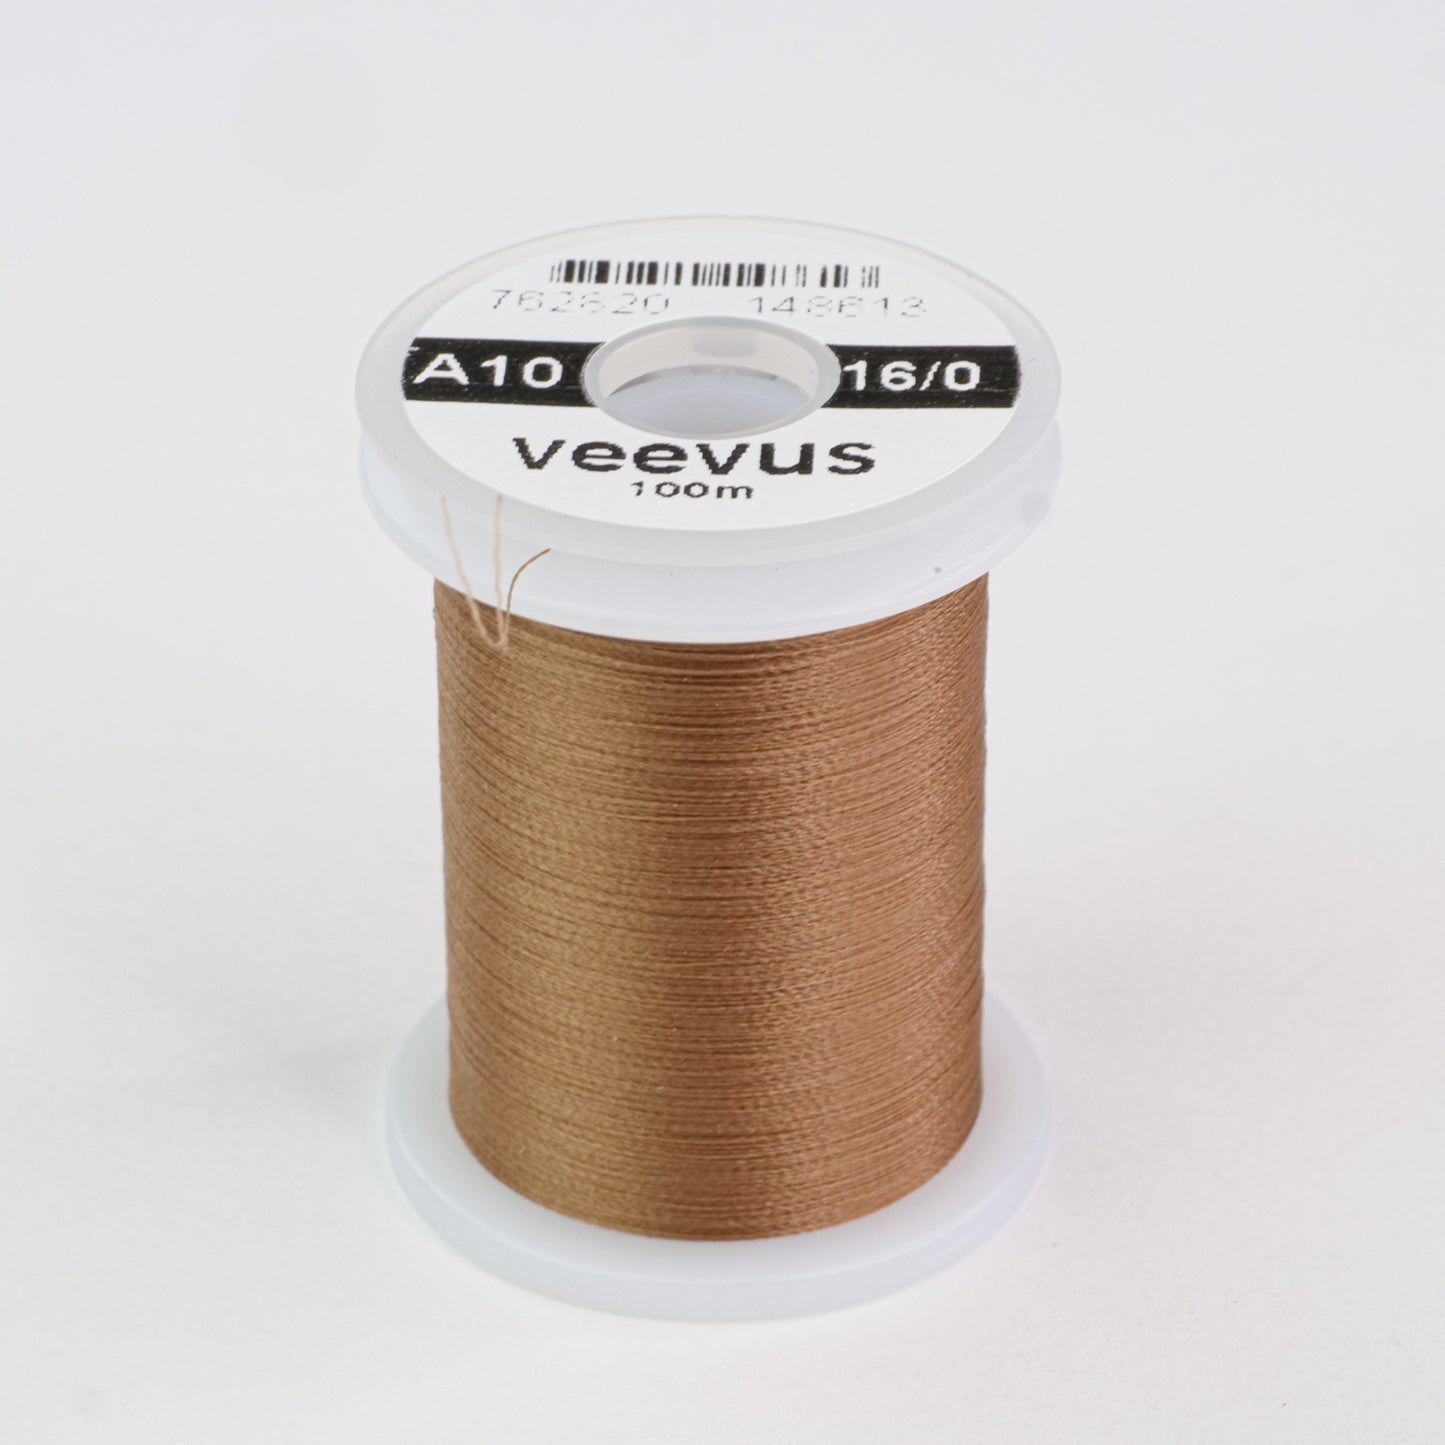 Veevus 16-0 Thread